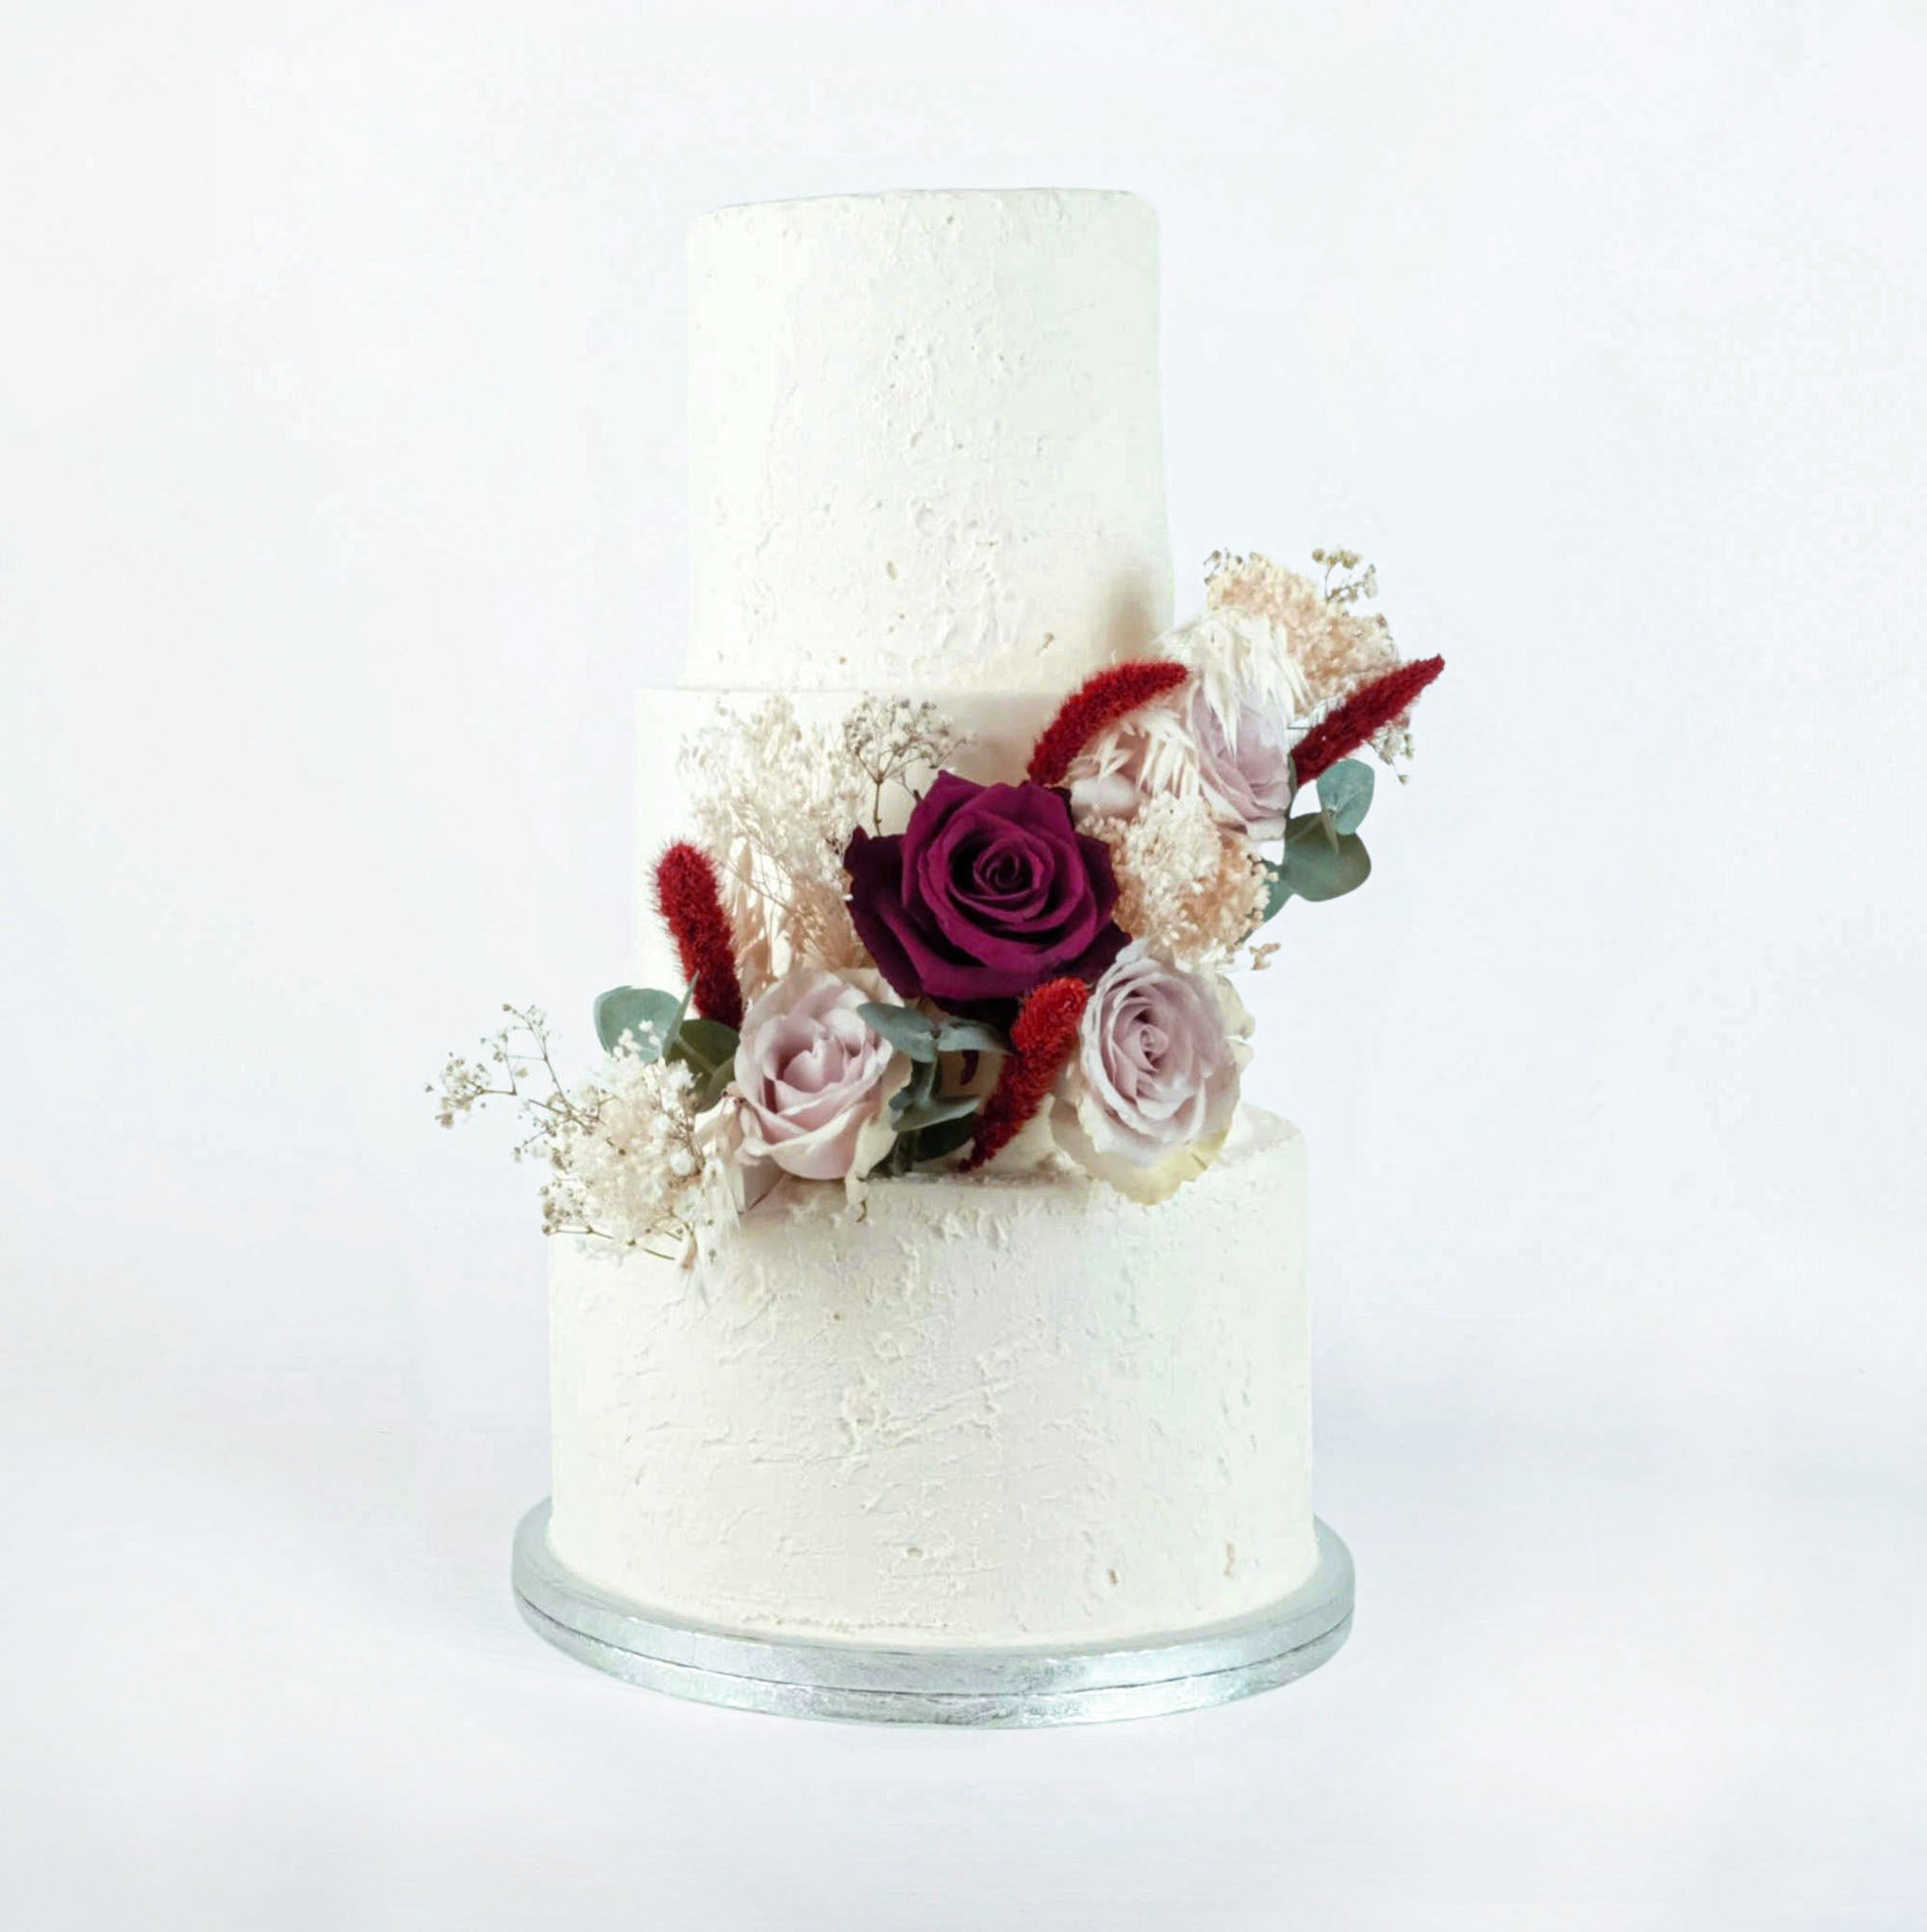 Rosette Cake - Buttercream Cake Design Idea | Decorated Treats